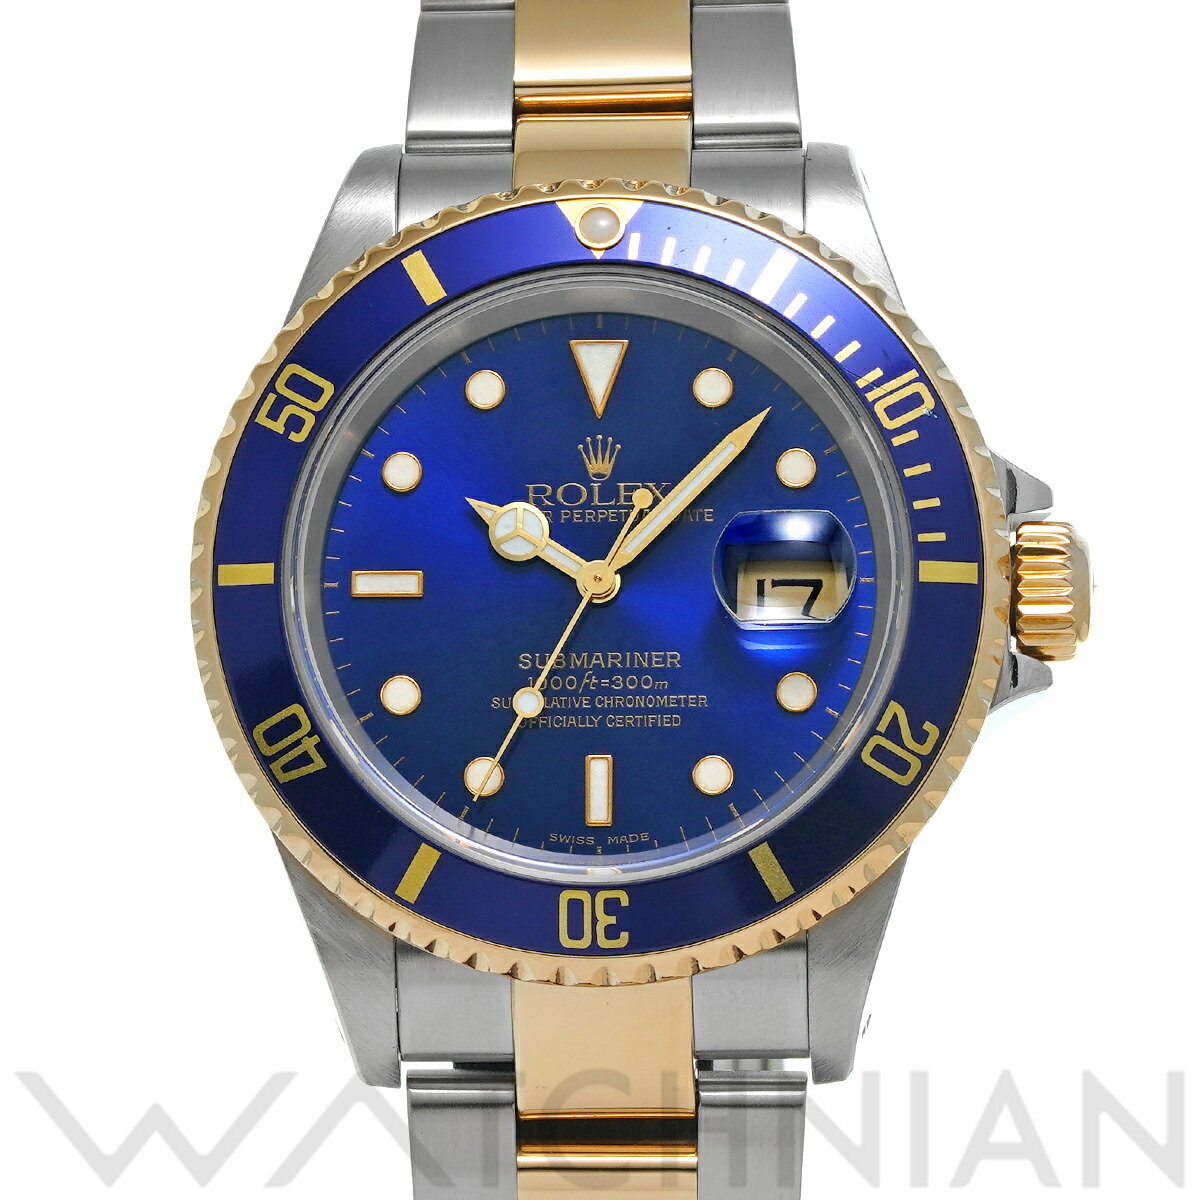 【ローン60回払い無金利】【中古】 ロレックス ROLEX サブマリーナ デイト 16613 P番(2000年頃製造) ブルー メンズ 腕時計 ロレックス 時計 高級腕時計 ブランド